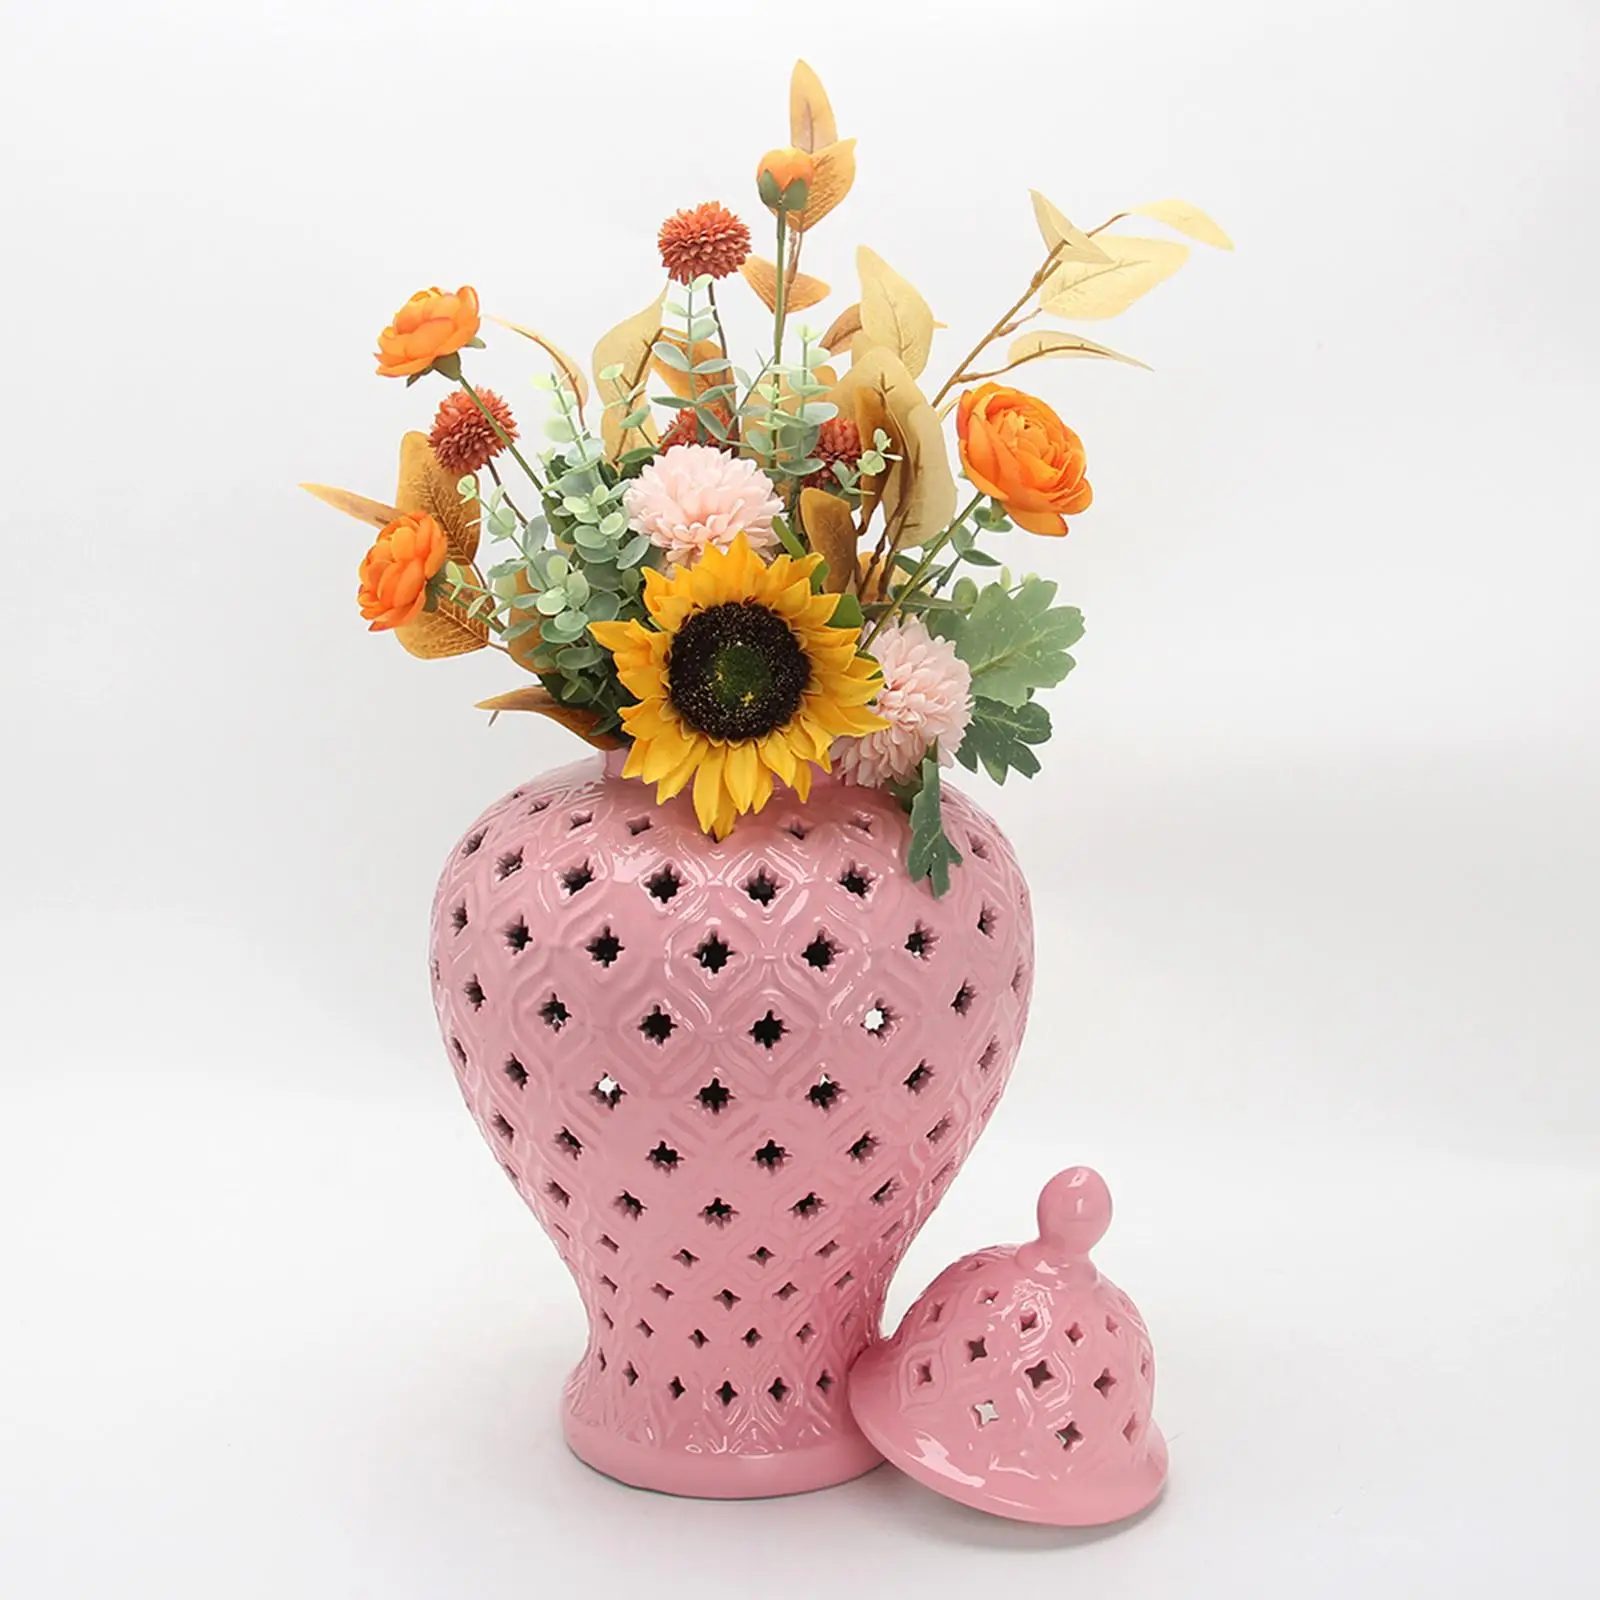 Traditional Ceramic Ginger Jar Flower Vase Storage Jar with Lid Floral Arrangement for Party Wedding Decoration Gift Collection